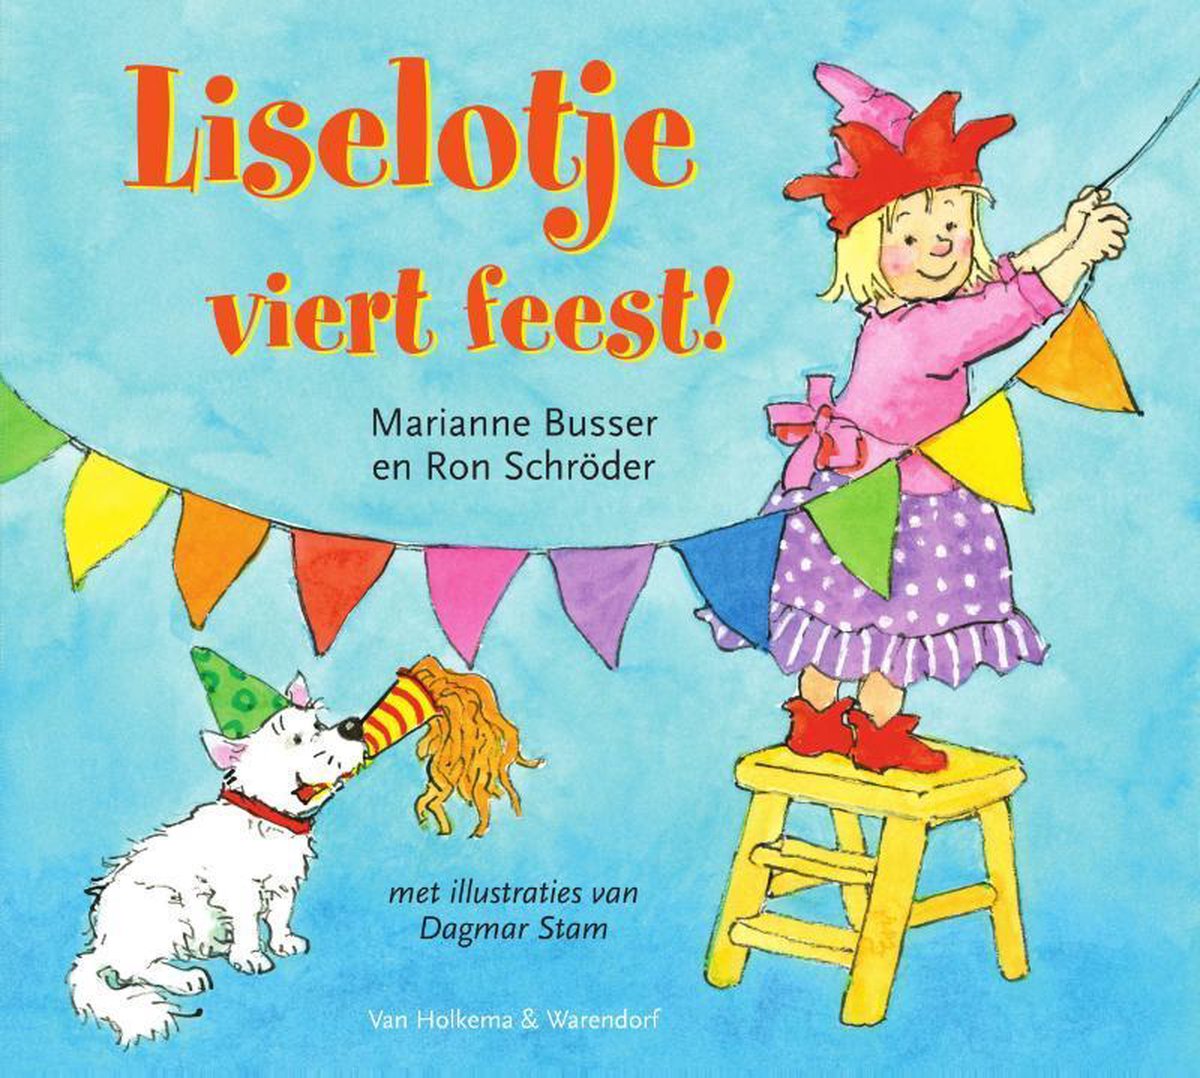 Liselotje - Liselotje viert feest!, Marianne Busser | 9789000359875 |  Boeken | bol.com